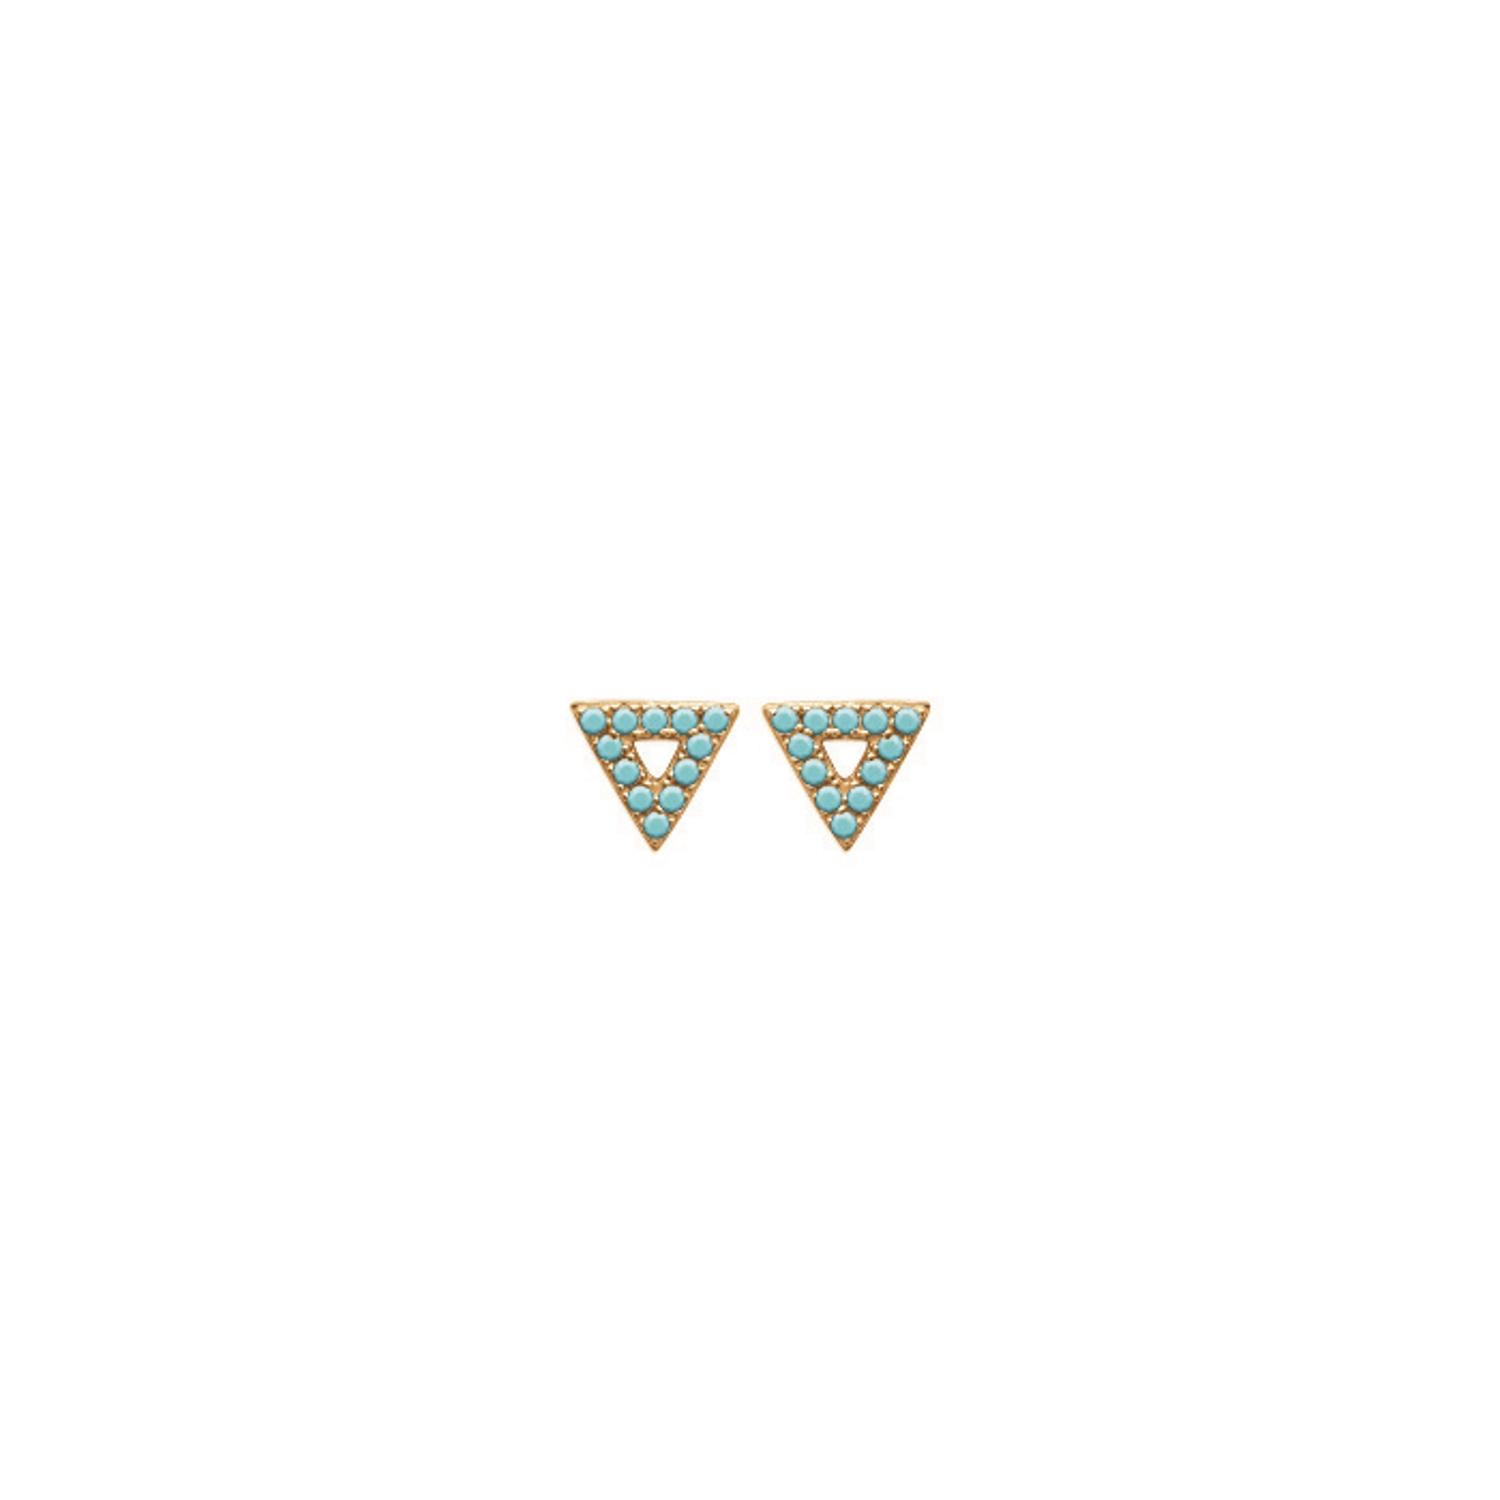 Boucles d'oreilles triangles en plaqué or jaune 18 carats serties de pierres d'imitation turquoise. Triangle Turquoise  Adolescent Adulte Femme Fille Indémodable 